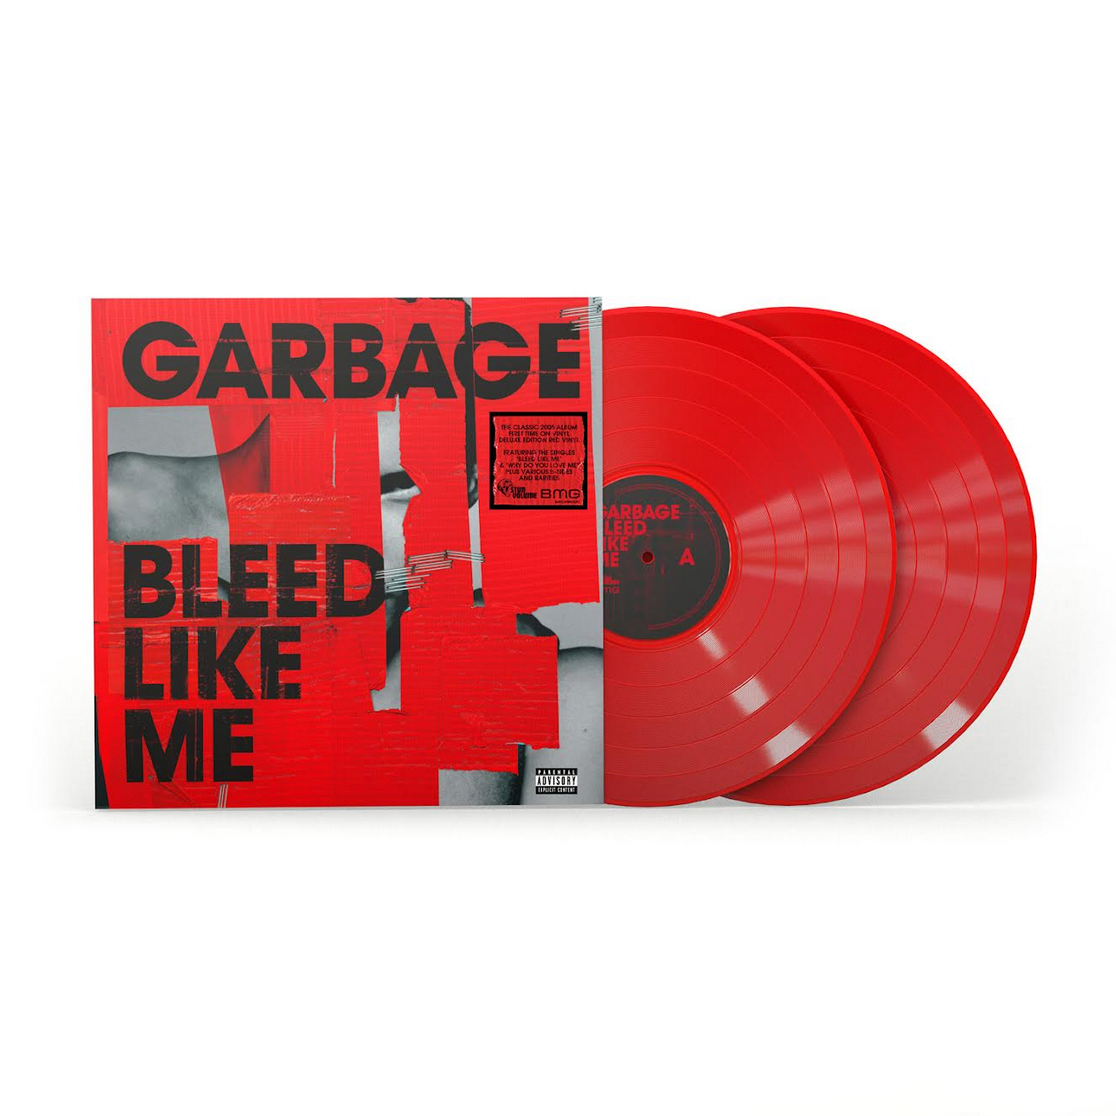 Garbage 'Bleed Like Me'